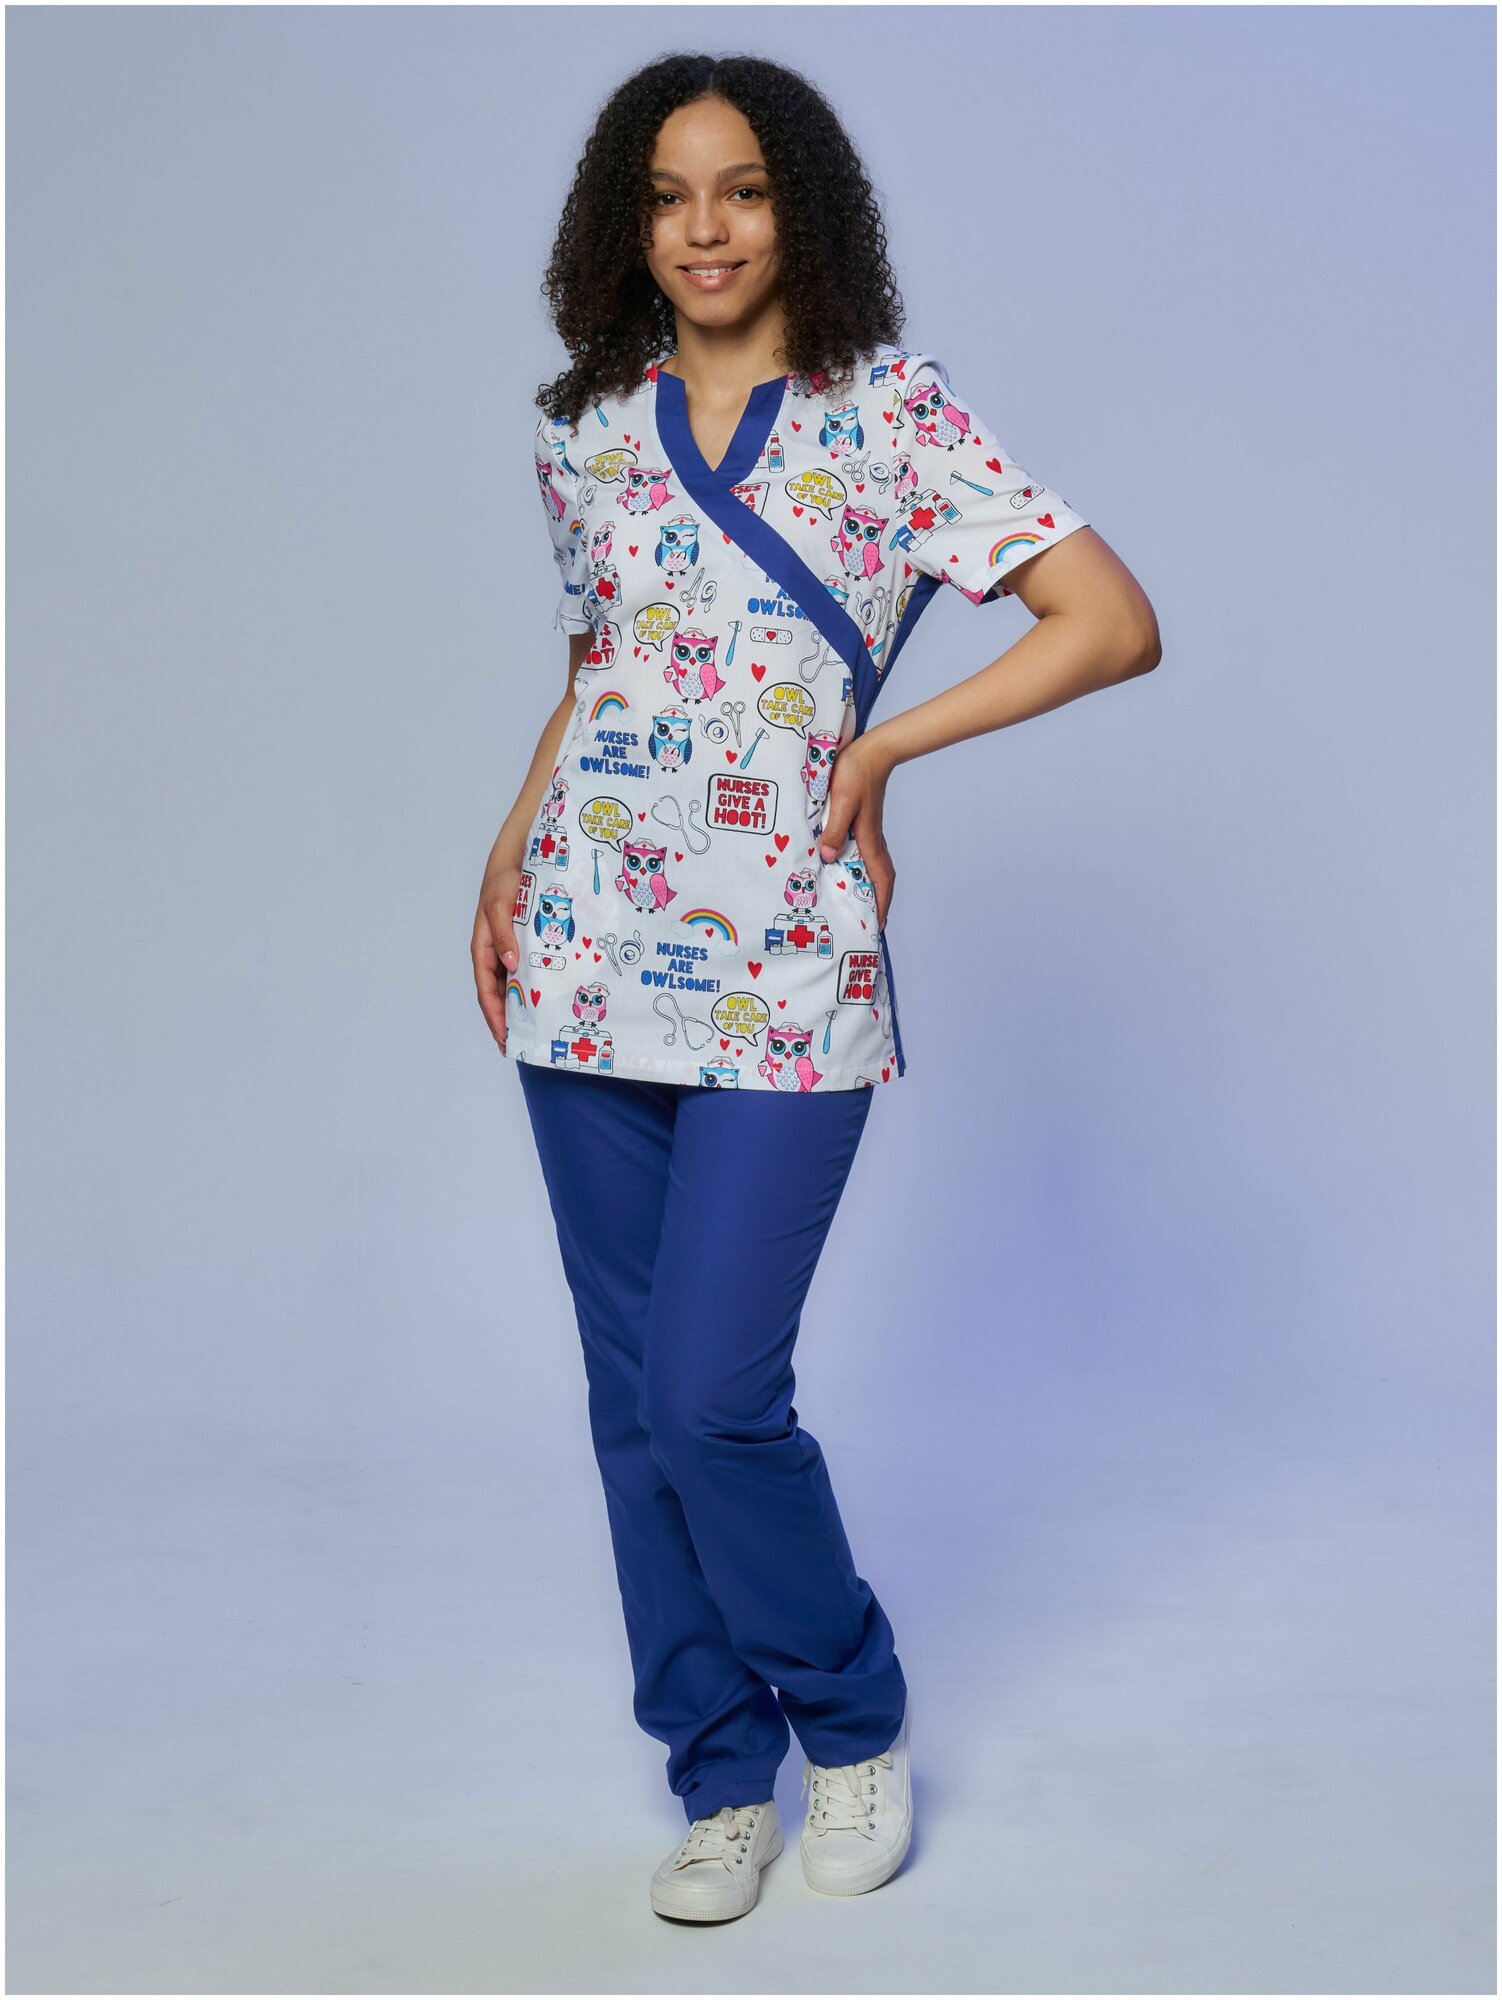 Медицинский костюм Альба-С женский с принтом синий. Хирургический костюм с рисунком голубой больших размеров. Спецодежда для женщин (блуза с брюками). Рабочий комплект одежды для врача. Размер 48